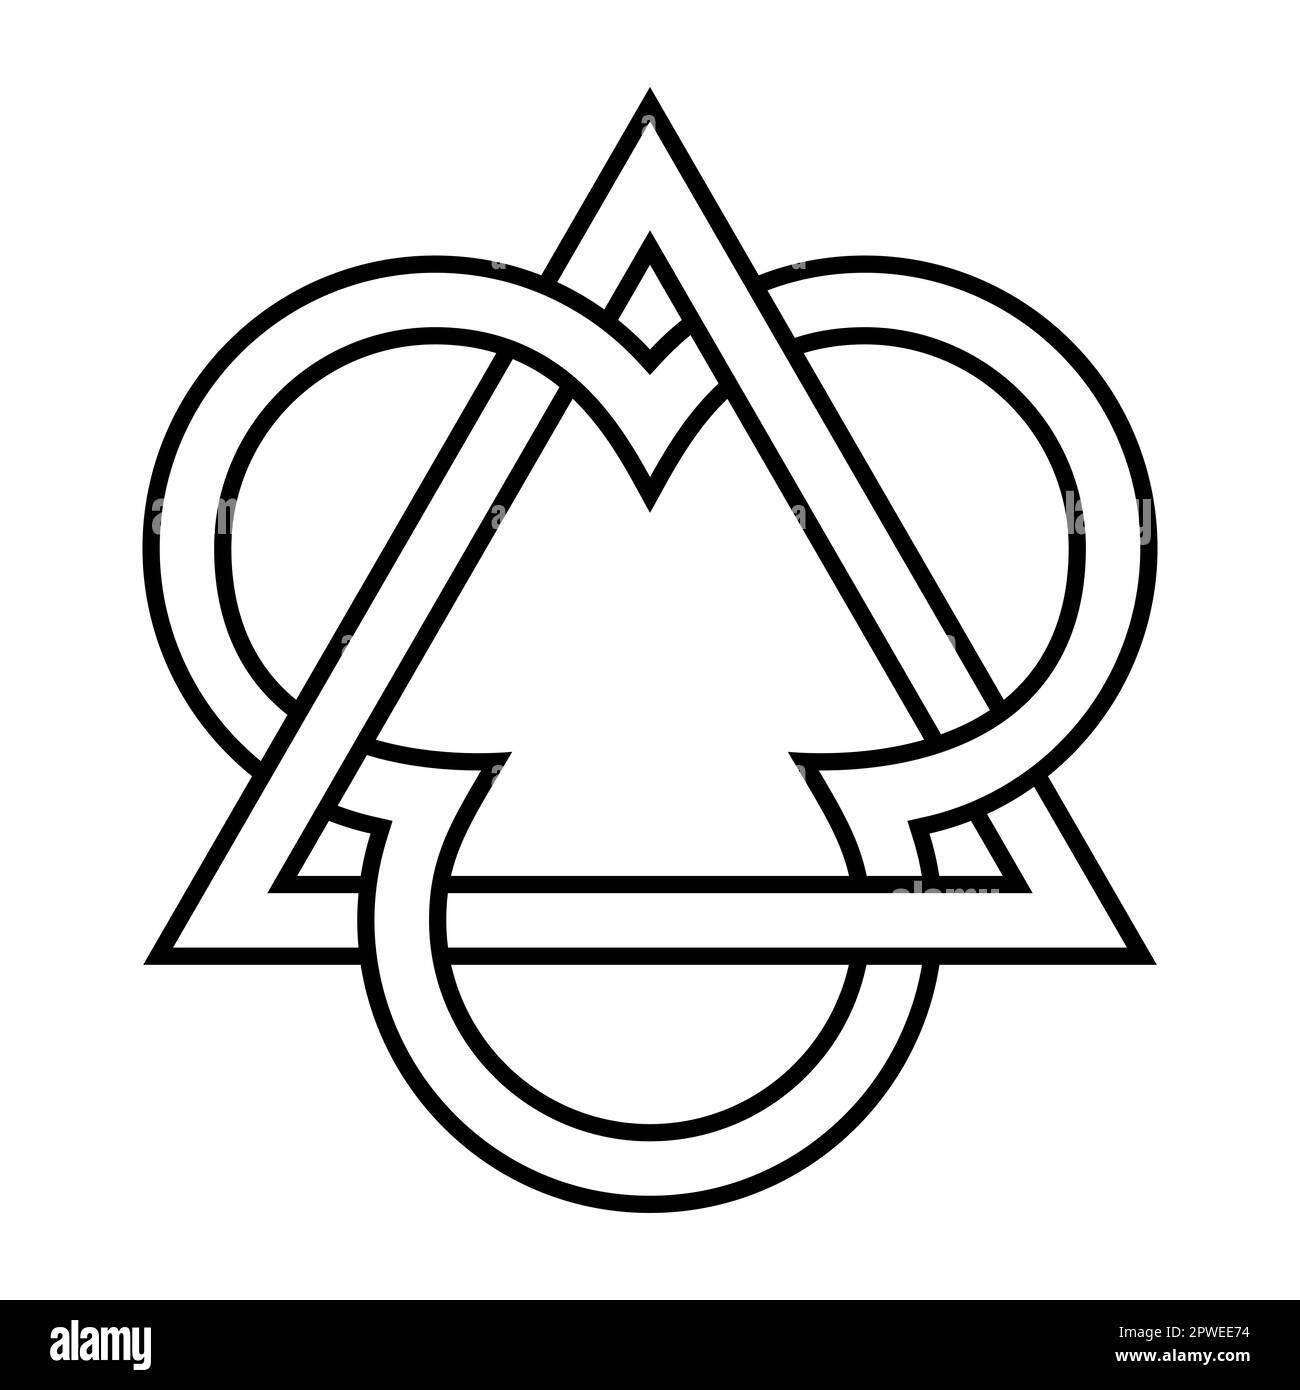 Triangolo intrecciato con tre segmenti di cerchio, emblema della Trinità. Tre cerchi che rappresentano il Padre, il Figlio Gesù Cristo e lo Spirito Santo. Foto Stock